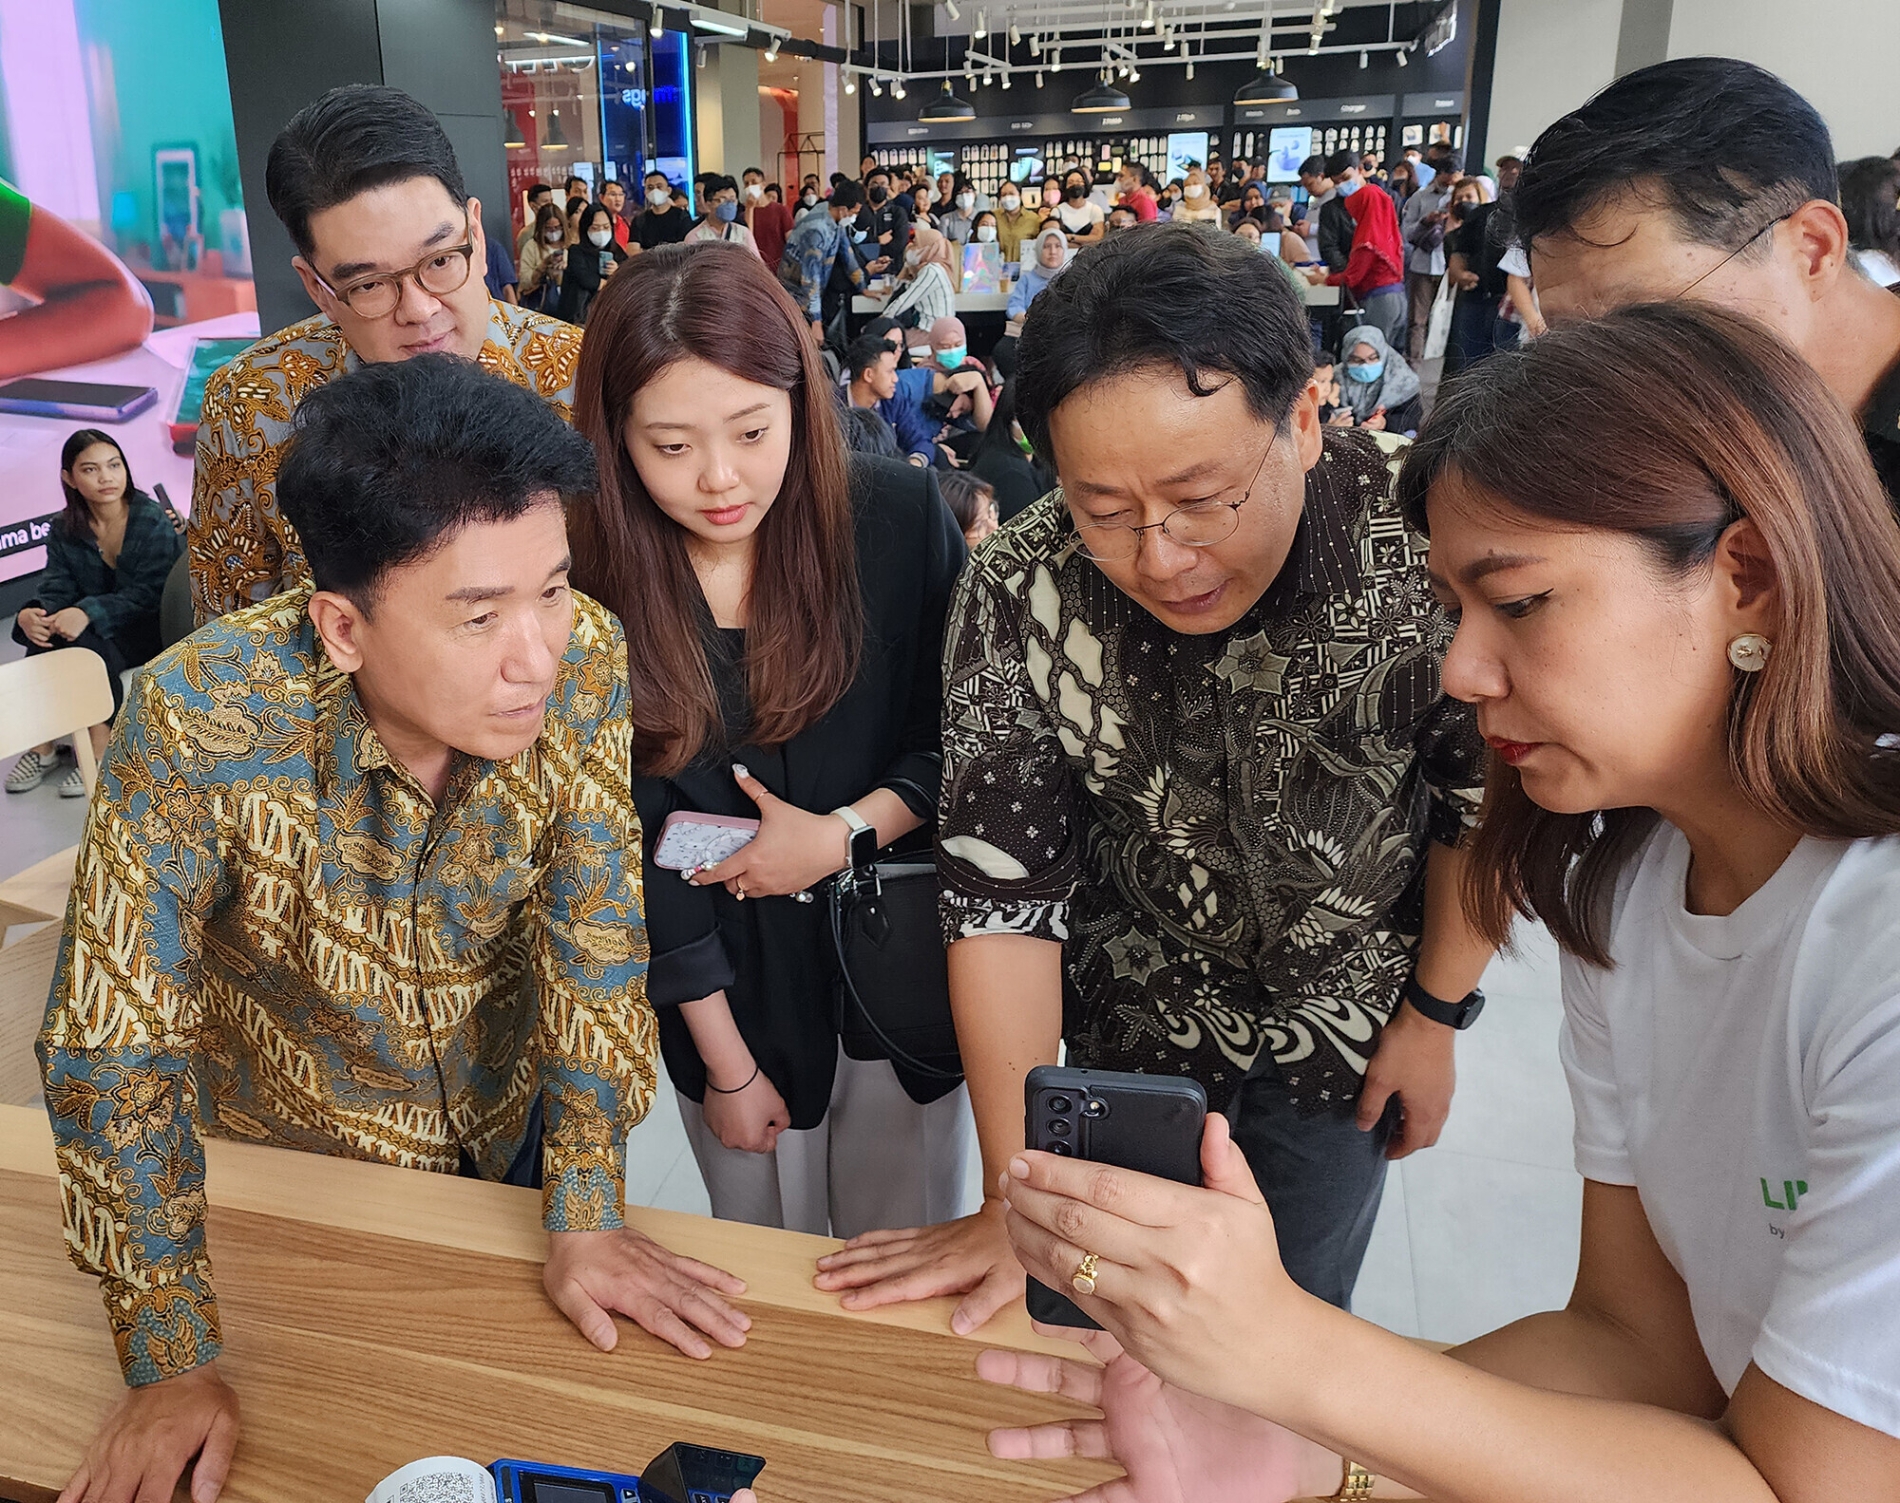 하나금융그룹은 지난 11일 오후 인도네시아 자카르타 소재 대형 쇼핑몰인 Senayan Park에서 ‘LINE Bank X SAMSUNG’ 체험 행사를 개최했다. 함영주 회장(앞줄 왼쪽)이 현지 라인뱅크 직원들과 함께 라인뱅크 앱의 대출 연계 간편결제를 체험해보고 있다./사진제공=하나금융그룹